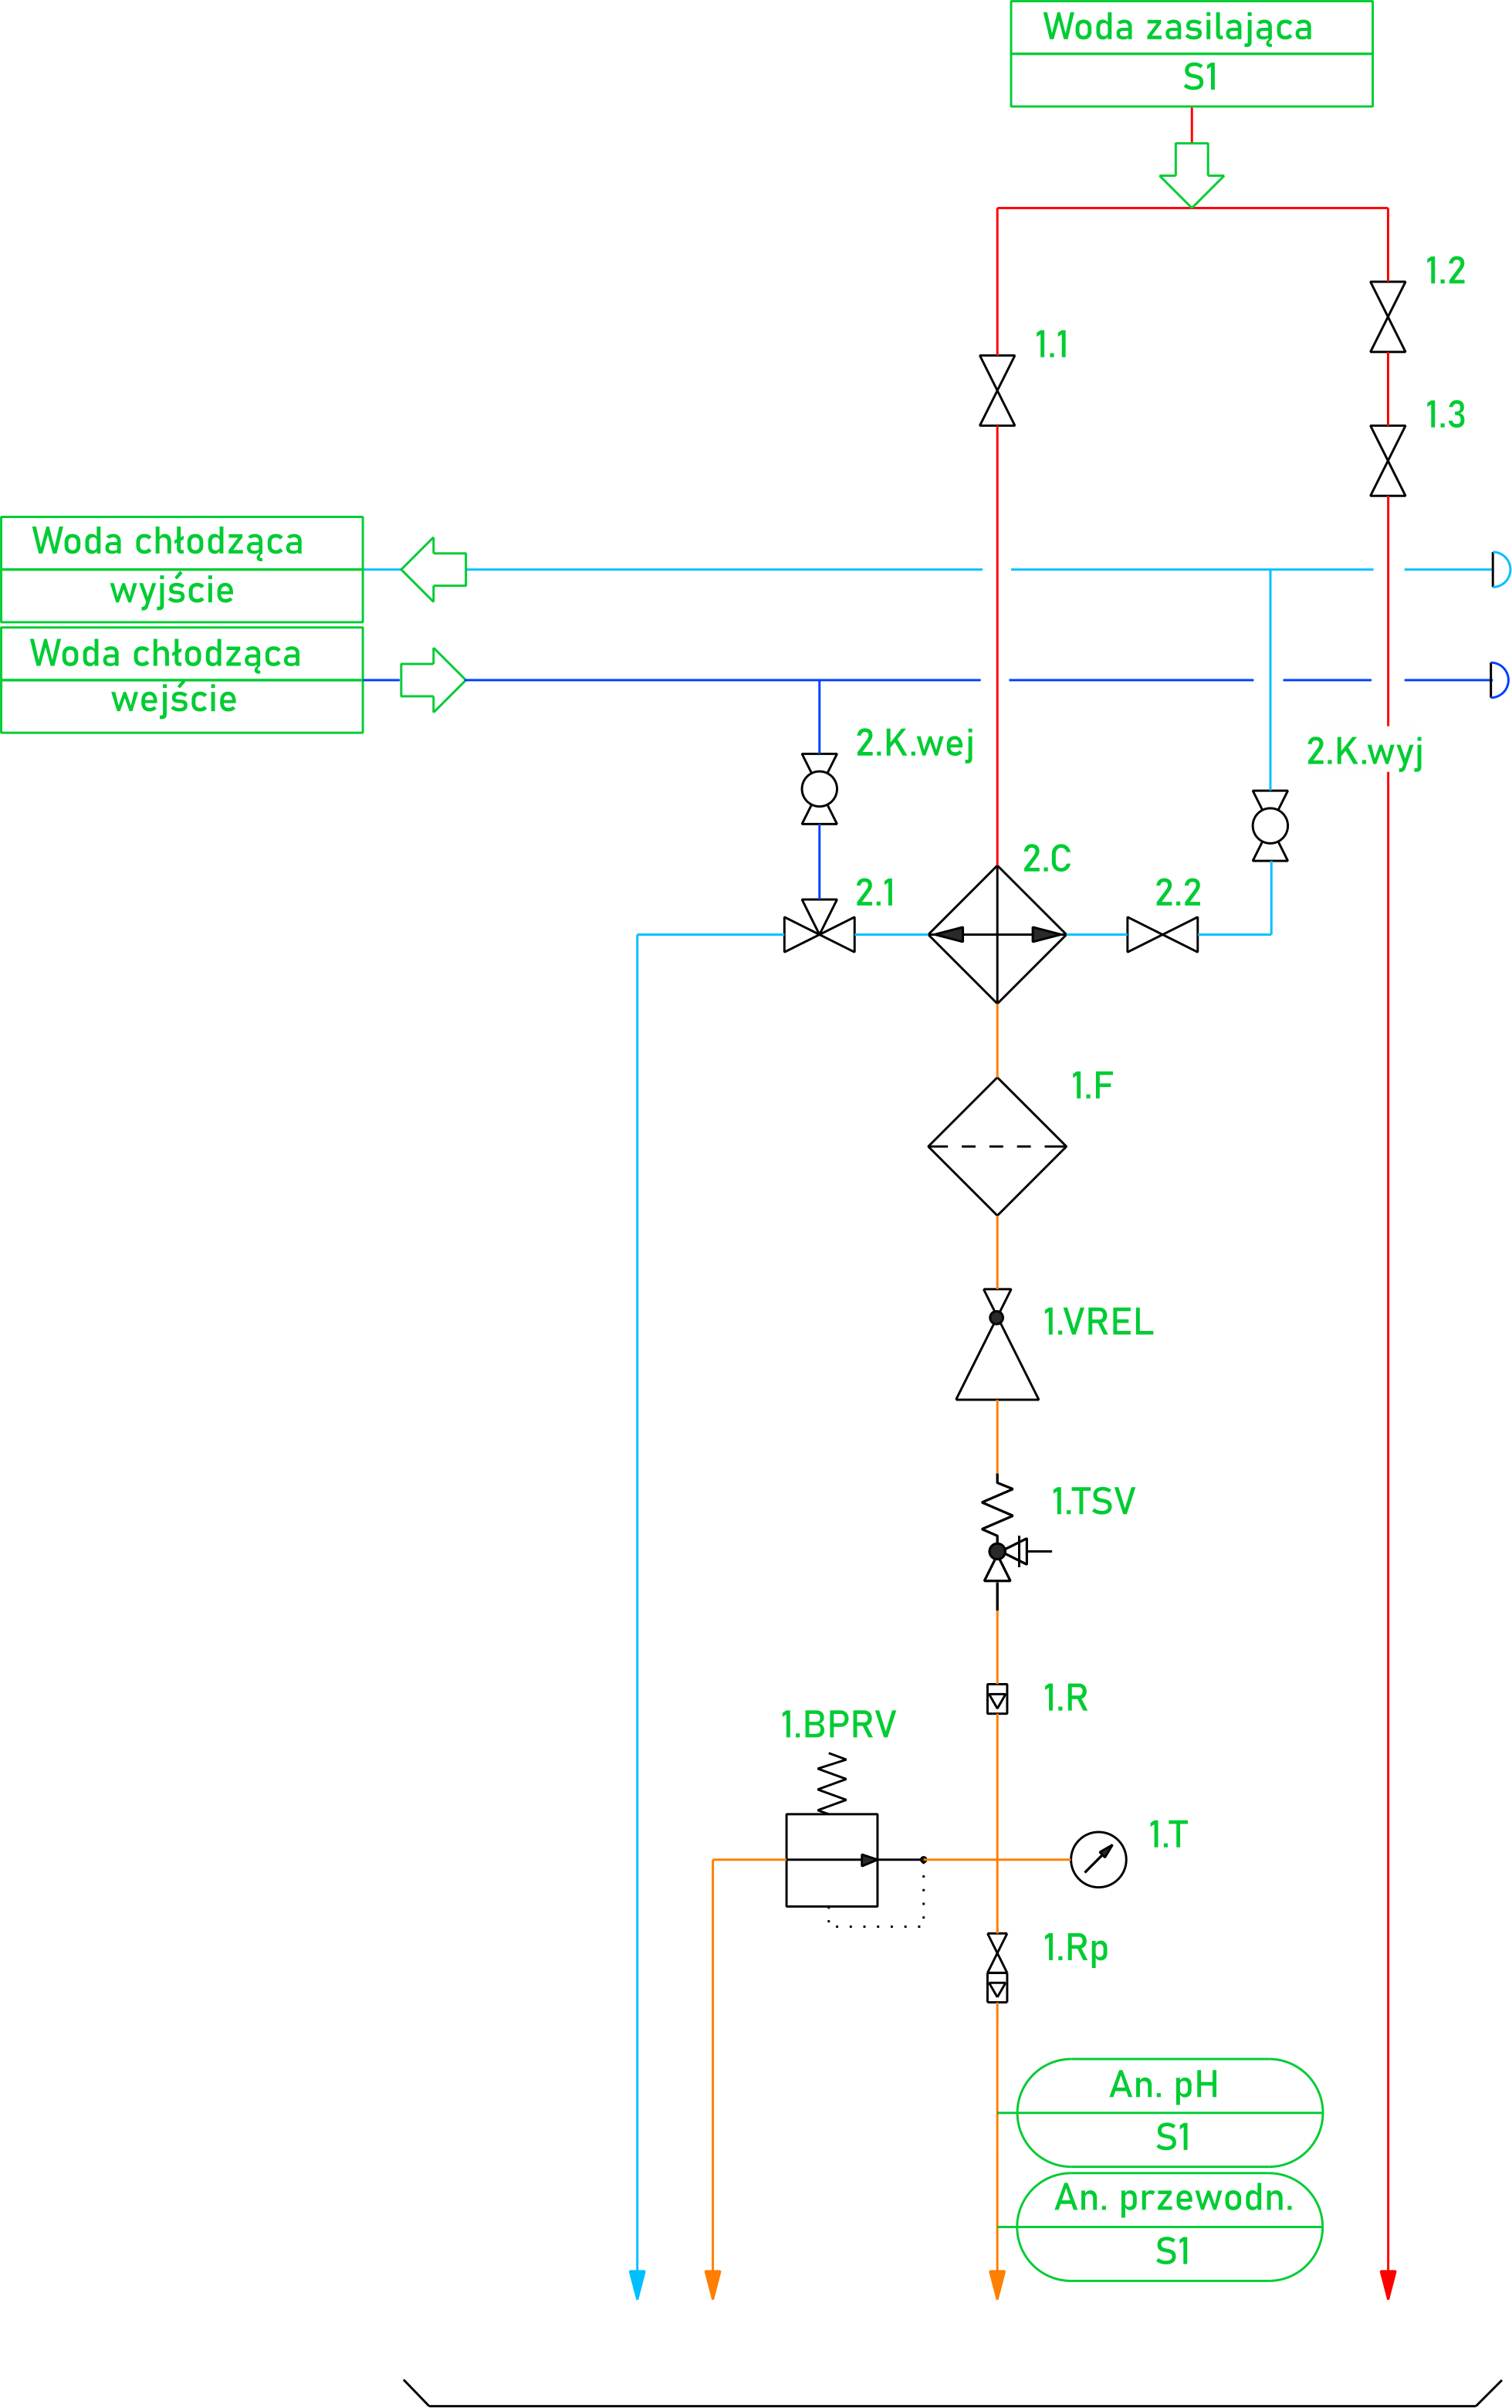 Schemat p&id panelu poboru próbki systemu SWAS dla analizy przewodności i pH wody zasilającej kocioł elektro-ciepłowni